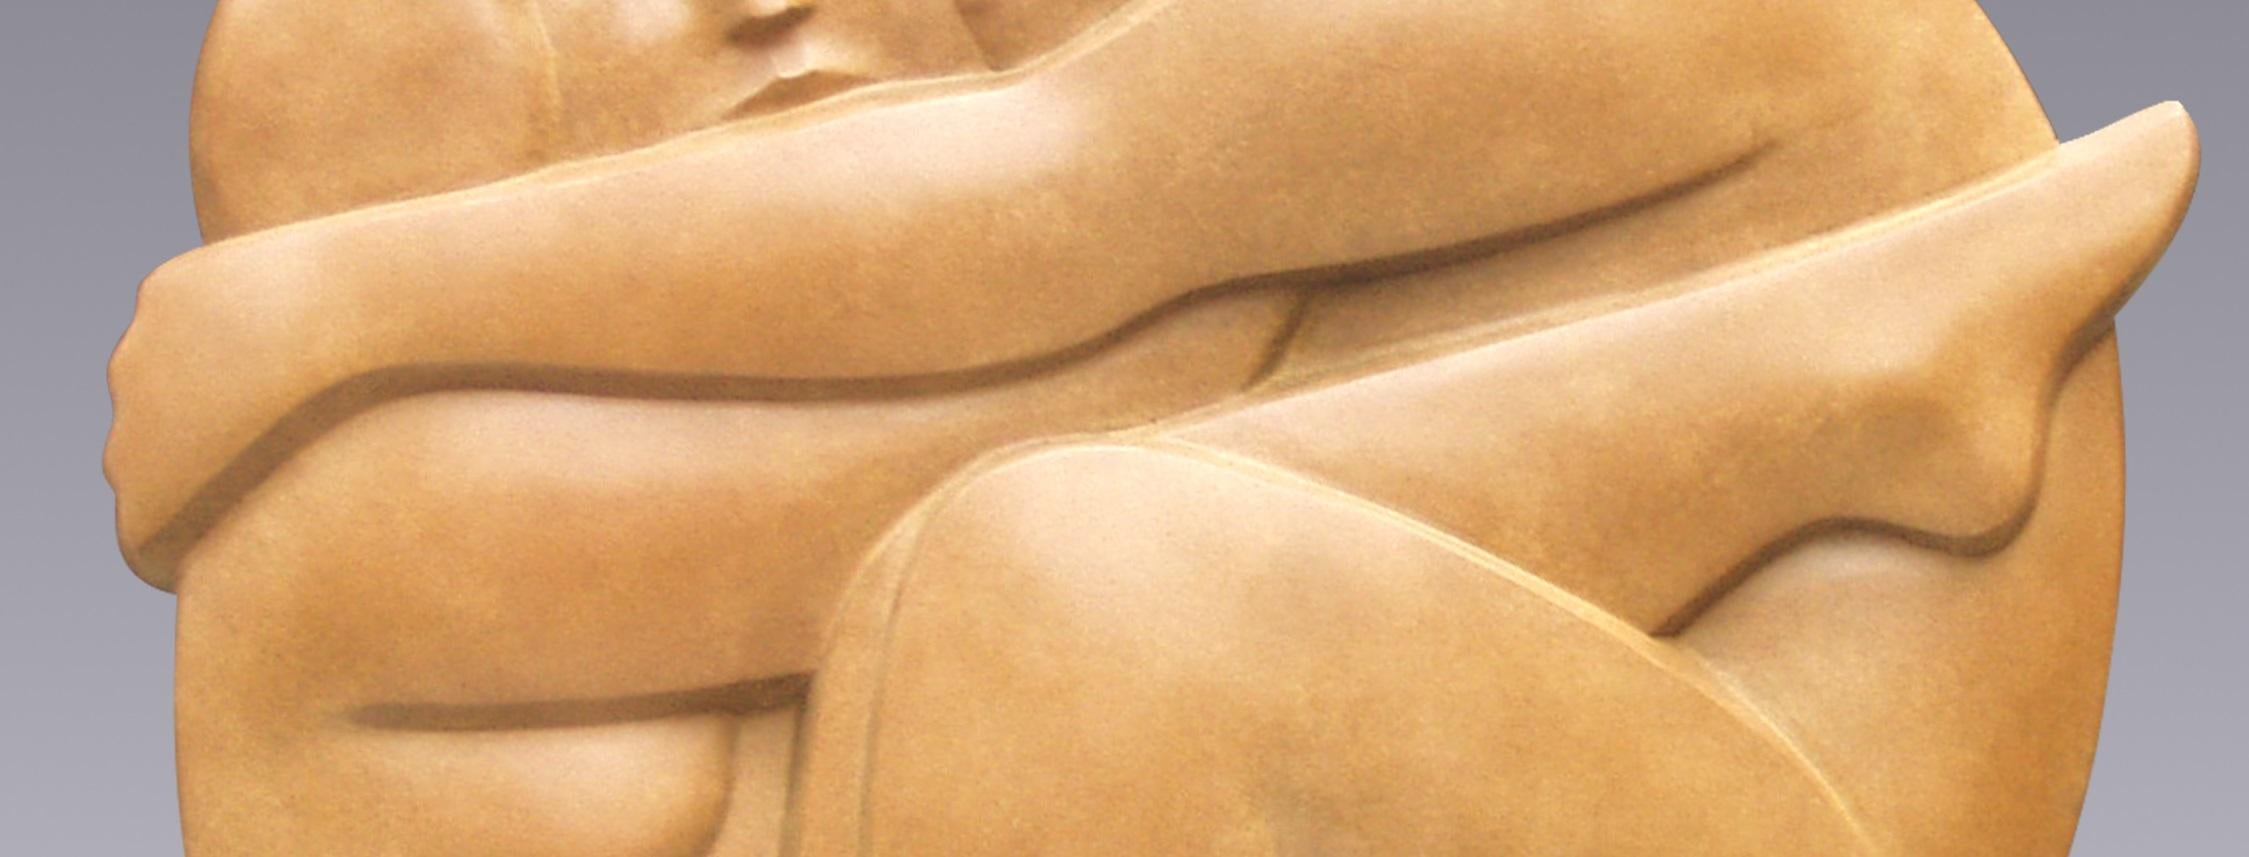 Omhelzing Umarmung Bronze-Skulptur Liebe Umarmung Zeitgenössische
Die Statuen von Erwin Meijer tragen eine erkennbare, persönliche Handschrift.
Sie atmen die Atmosphäre eines erzählenden Gedichts, in dem der Leser nicht nur dem Künstler, sondern